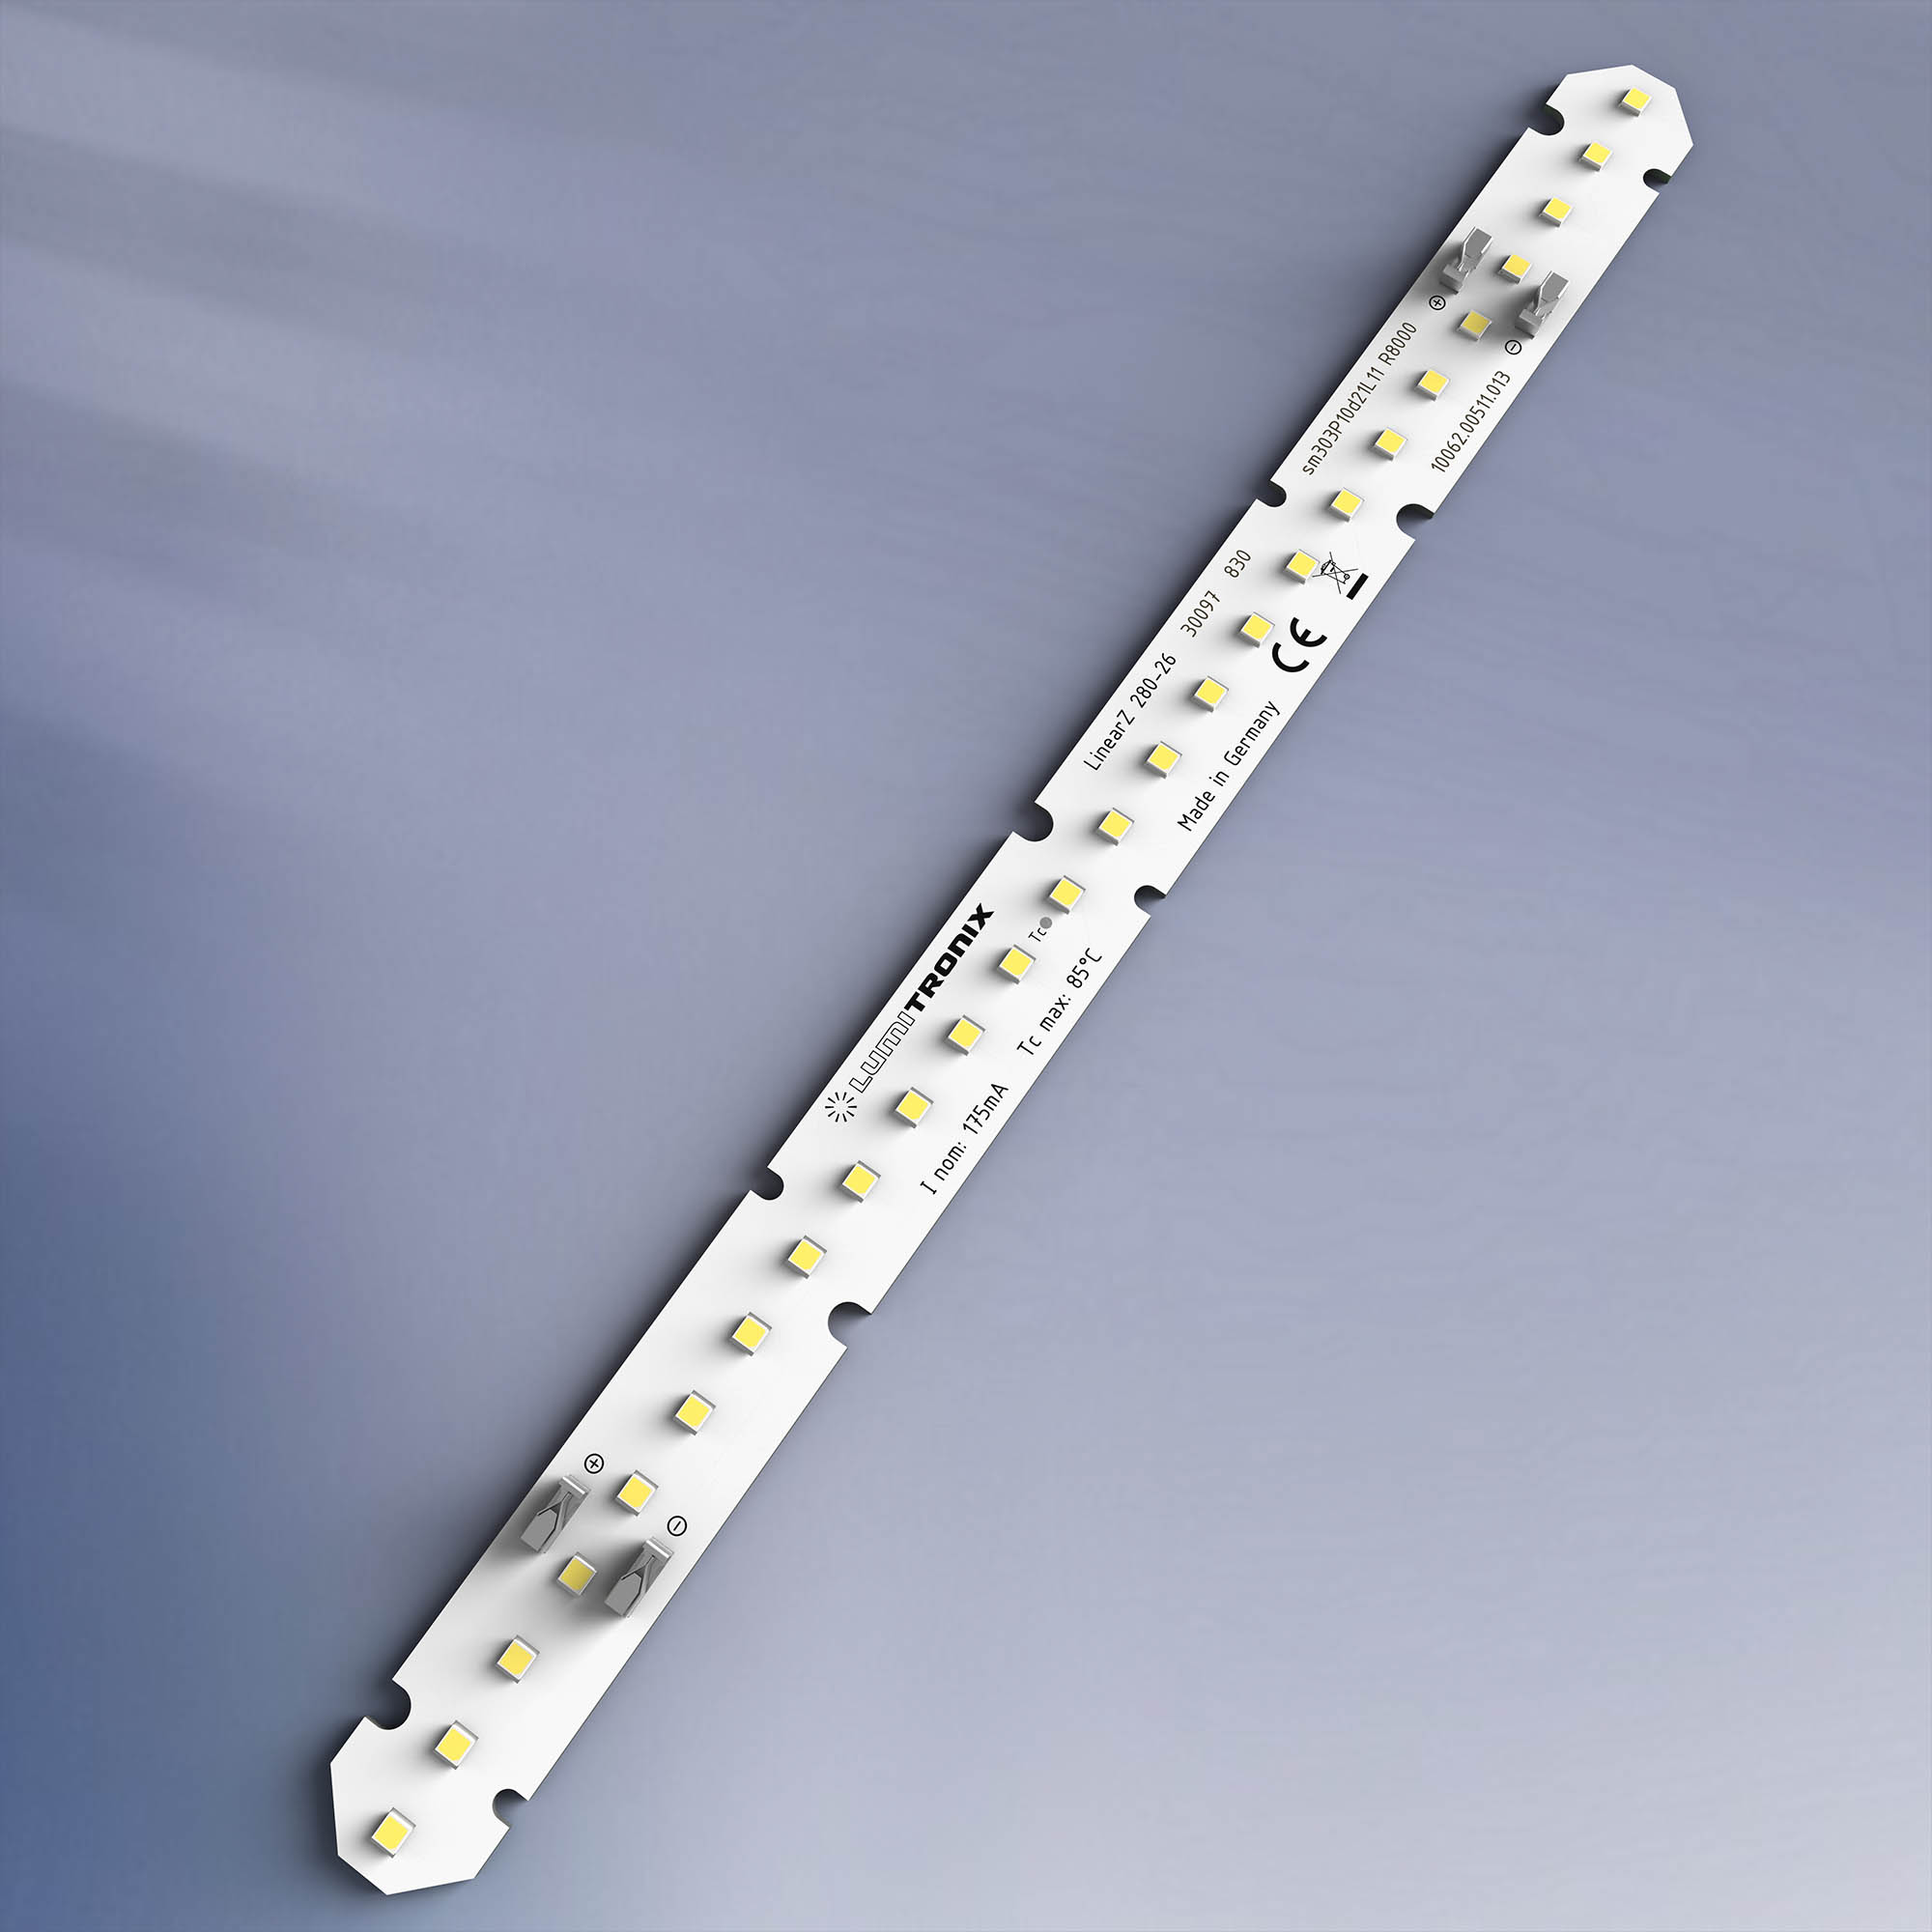 LinearZ 26 Nichia Fita LED Zhaga Optisolis CRI98+ branco frio 6500K 740lm 175mA 37.5V 26 LED módulo 28cm (2643lm/m 24W/m)